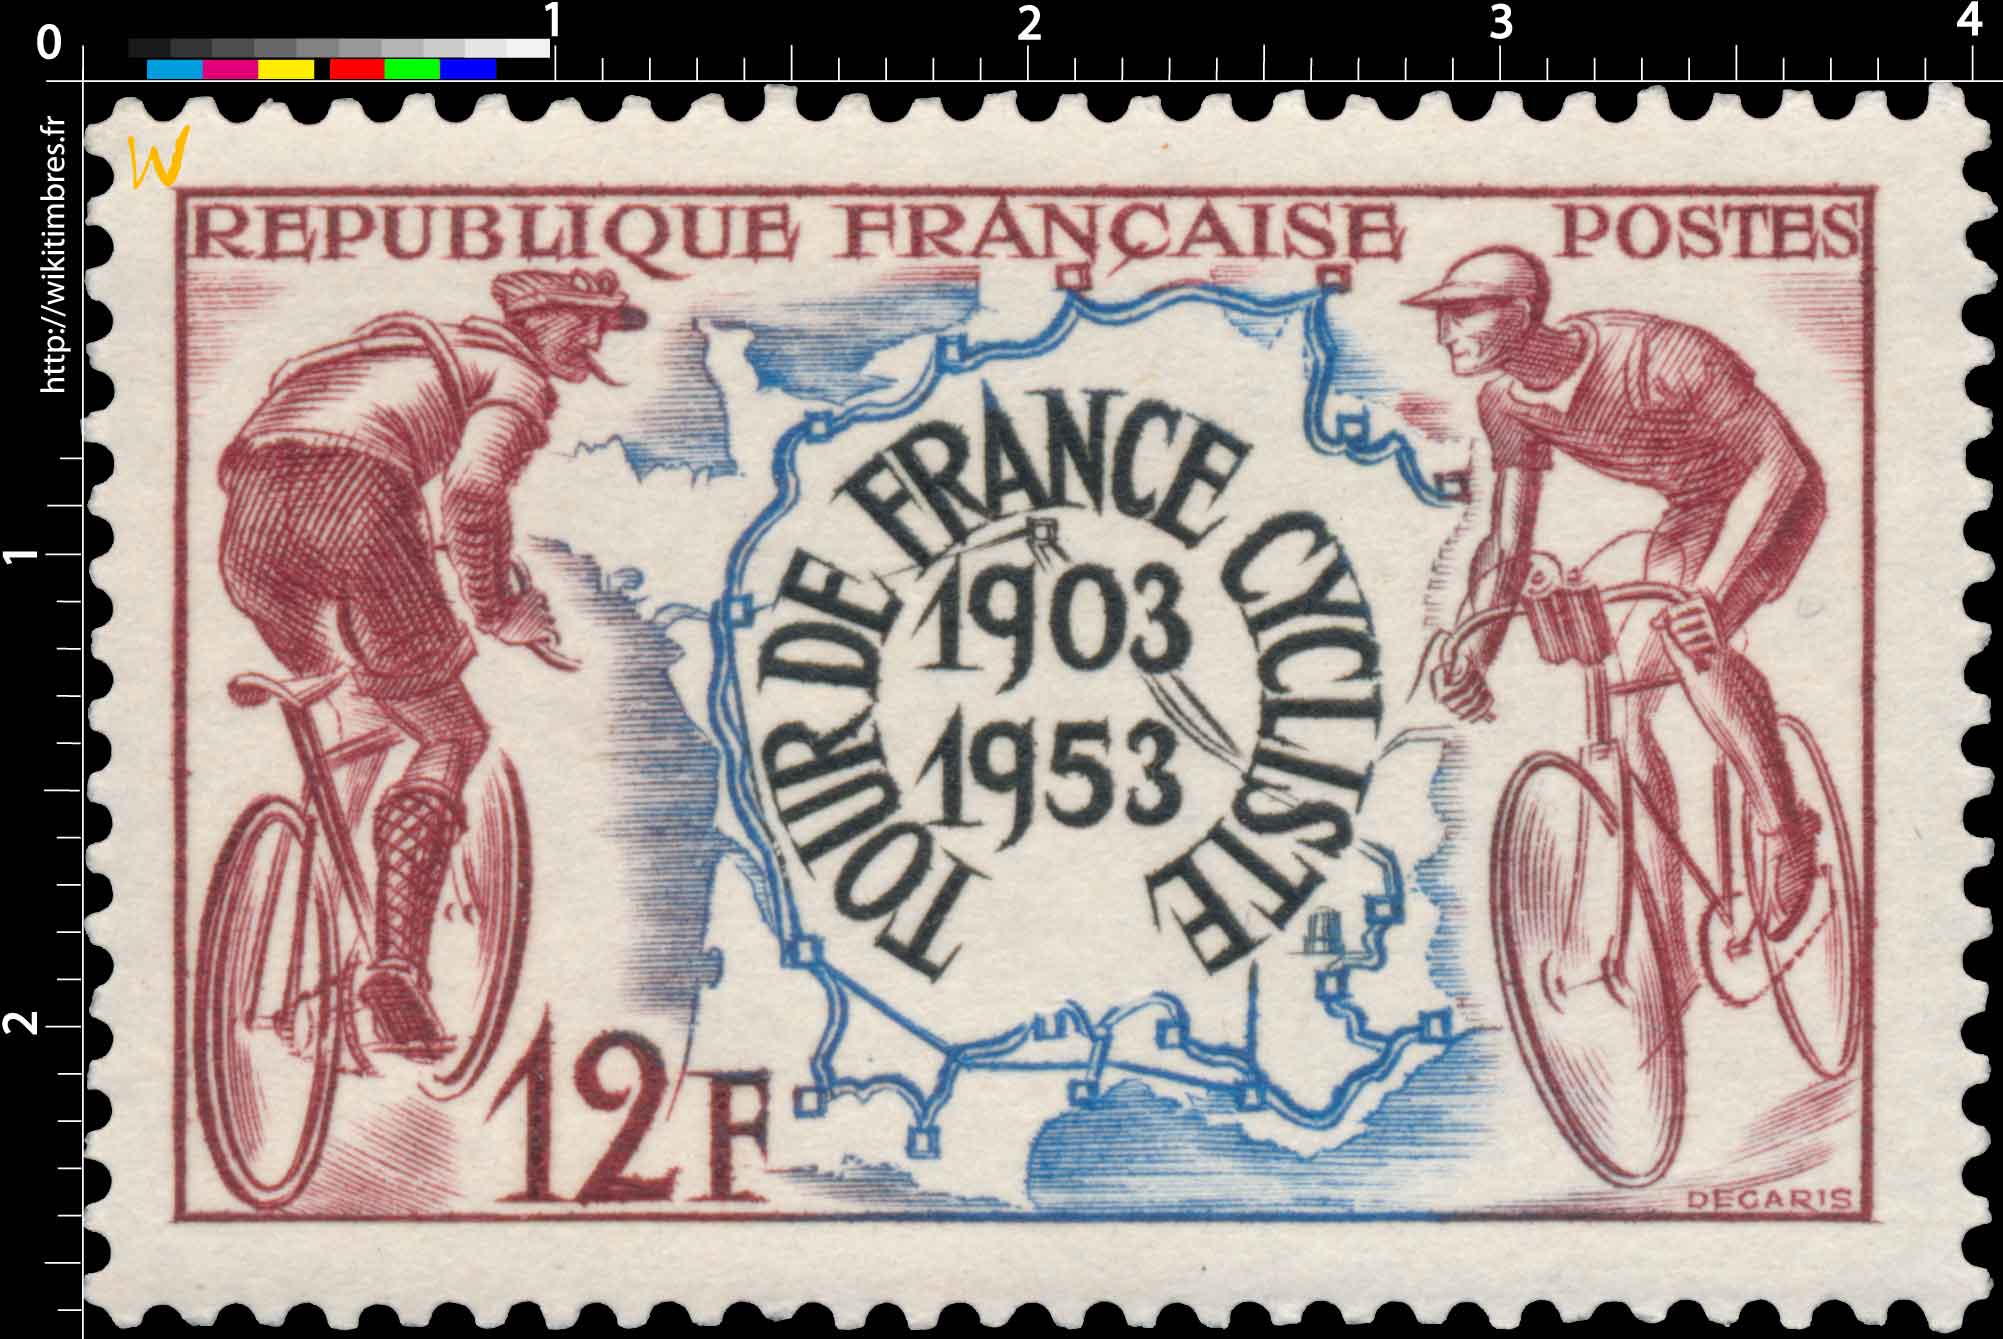 TOUR DE FRANCE CYCLISTE 1903-1953